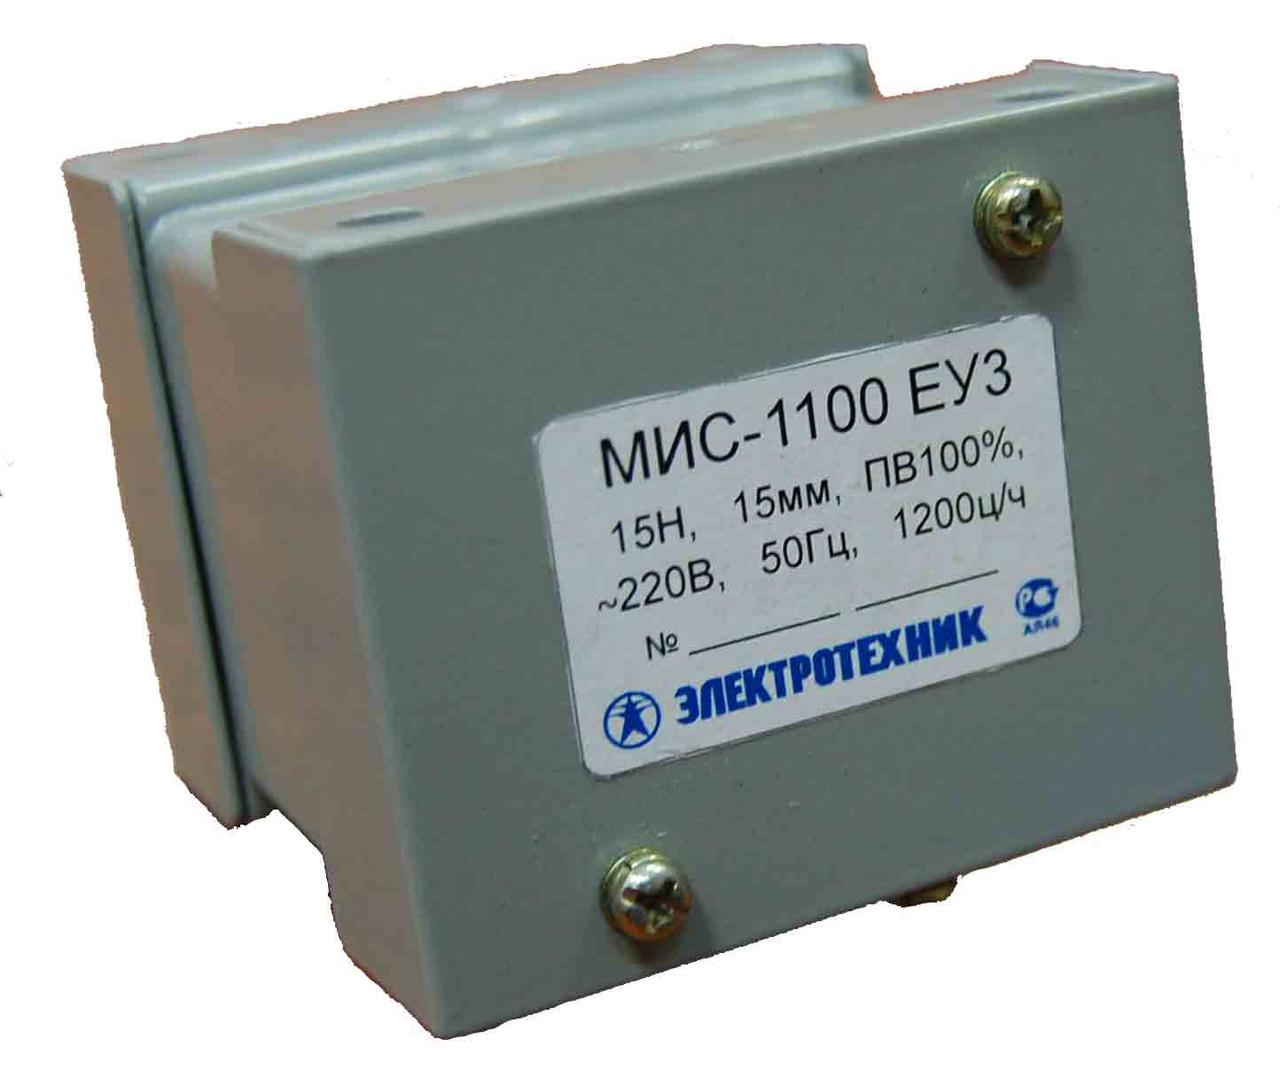 МИС-1100 ЕУ3, 220В, тянущее исполнение, ПВ 100%, IP20, с жесткими выводами, электромагнит  (ЭТ)